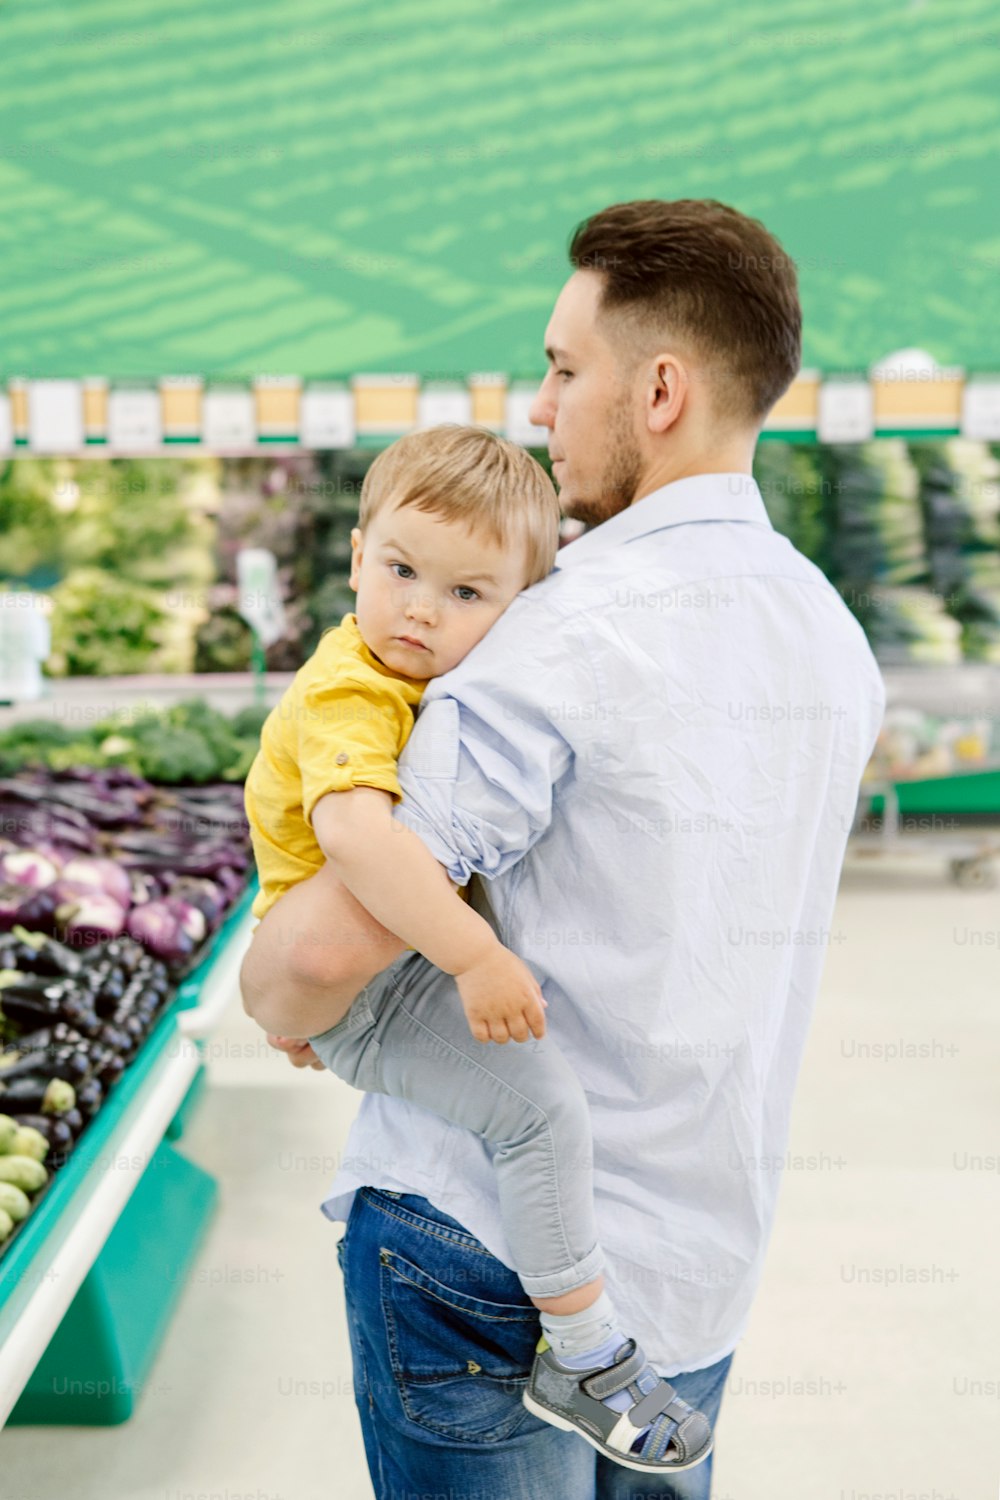 赤ん坊の息子と食料品店で買い物をしている白人の父親。新鮮な野菜を買うお父さん。おやつランチに健康的な食事を選ぶ幼児の子供を持つ男性の親。ライフスタイル本物の率直な瞬間。